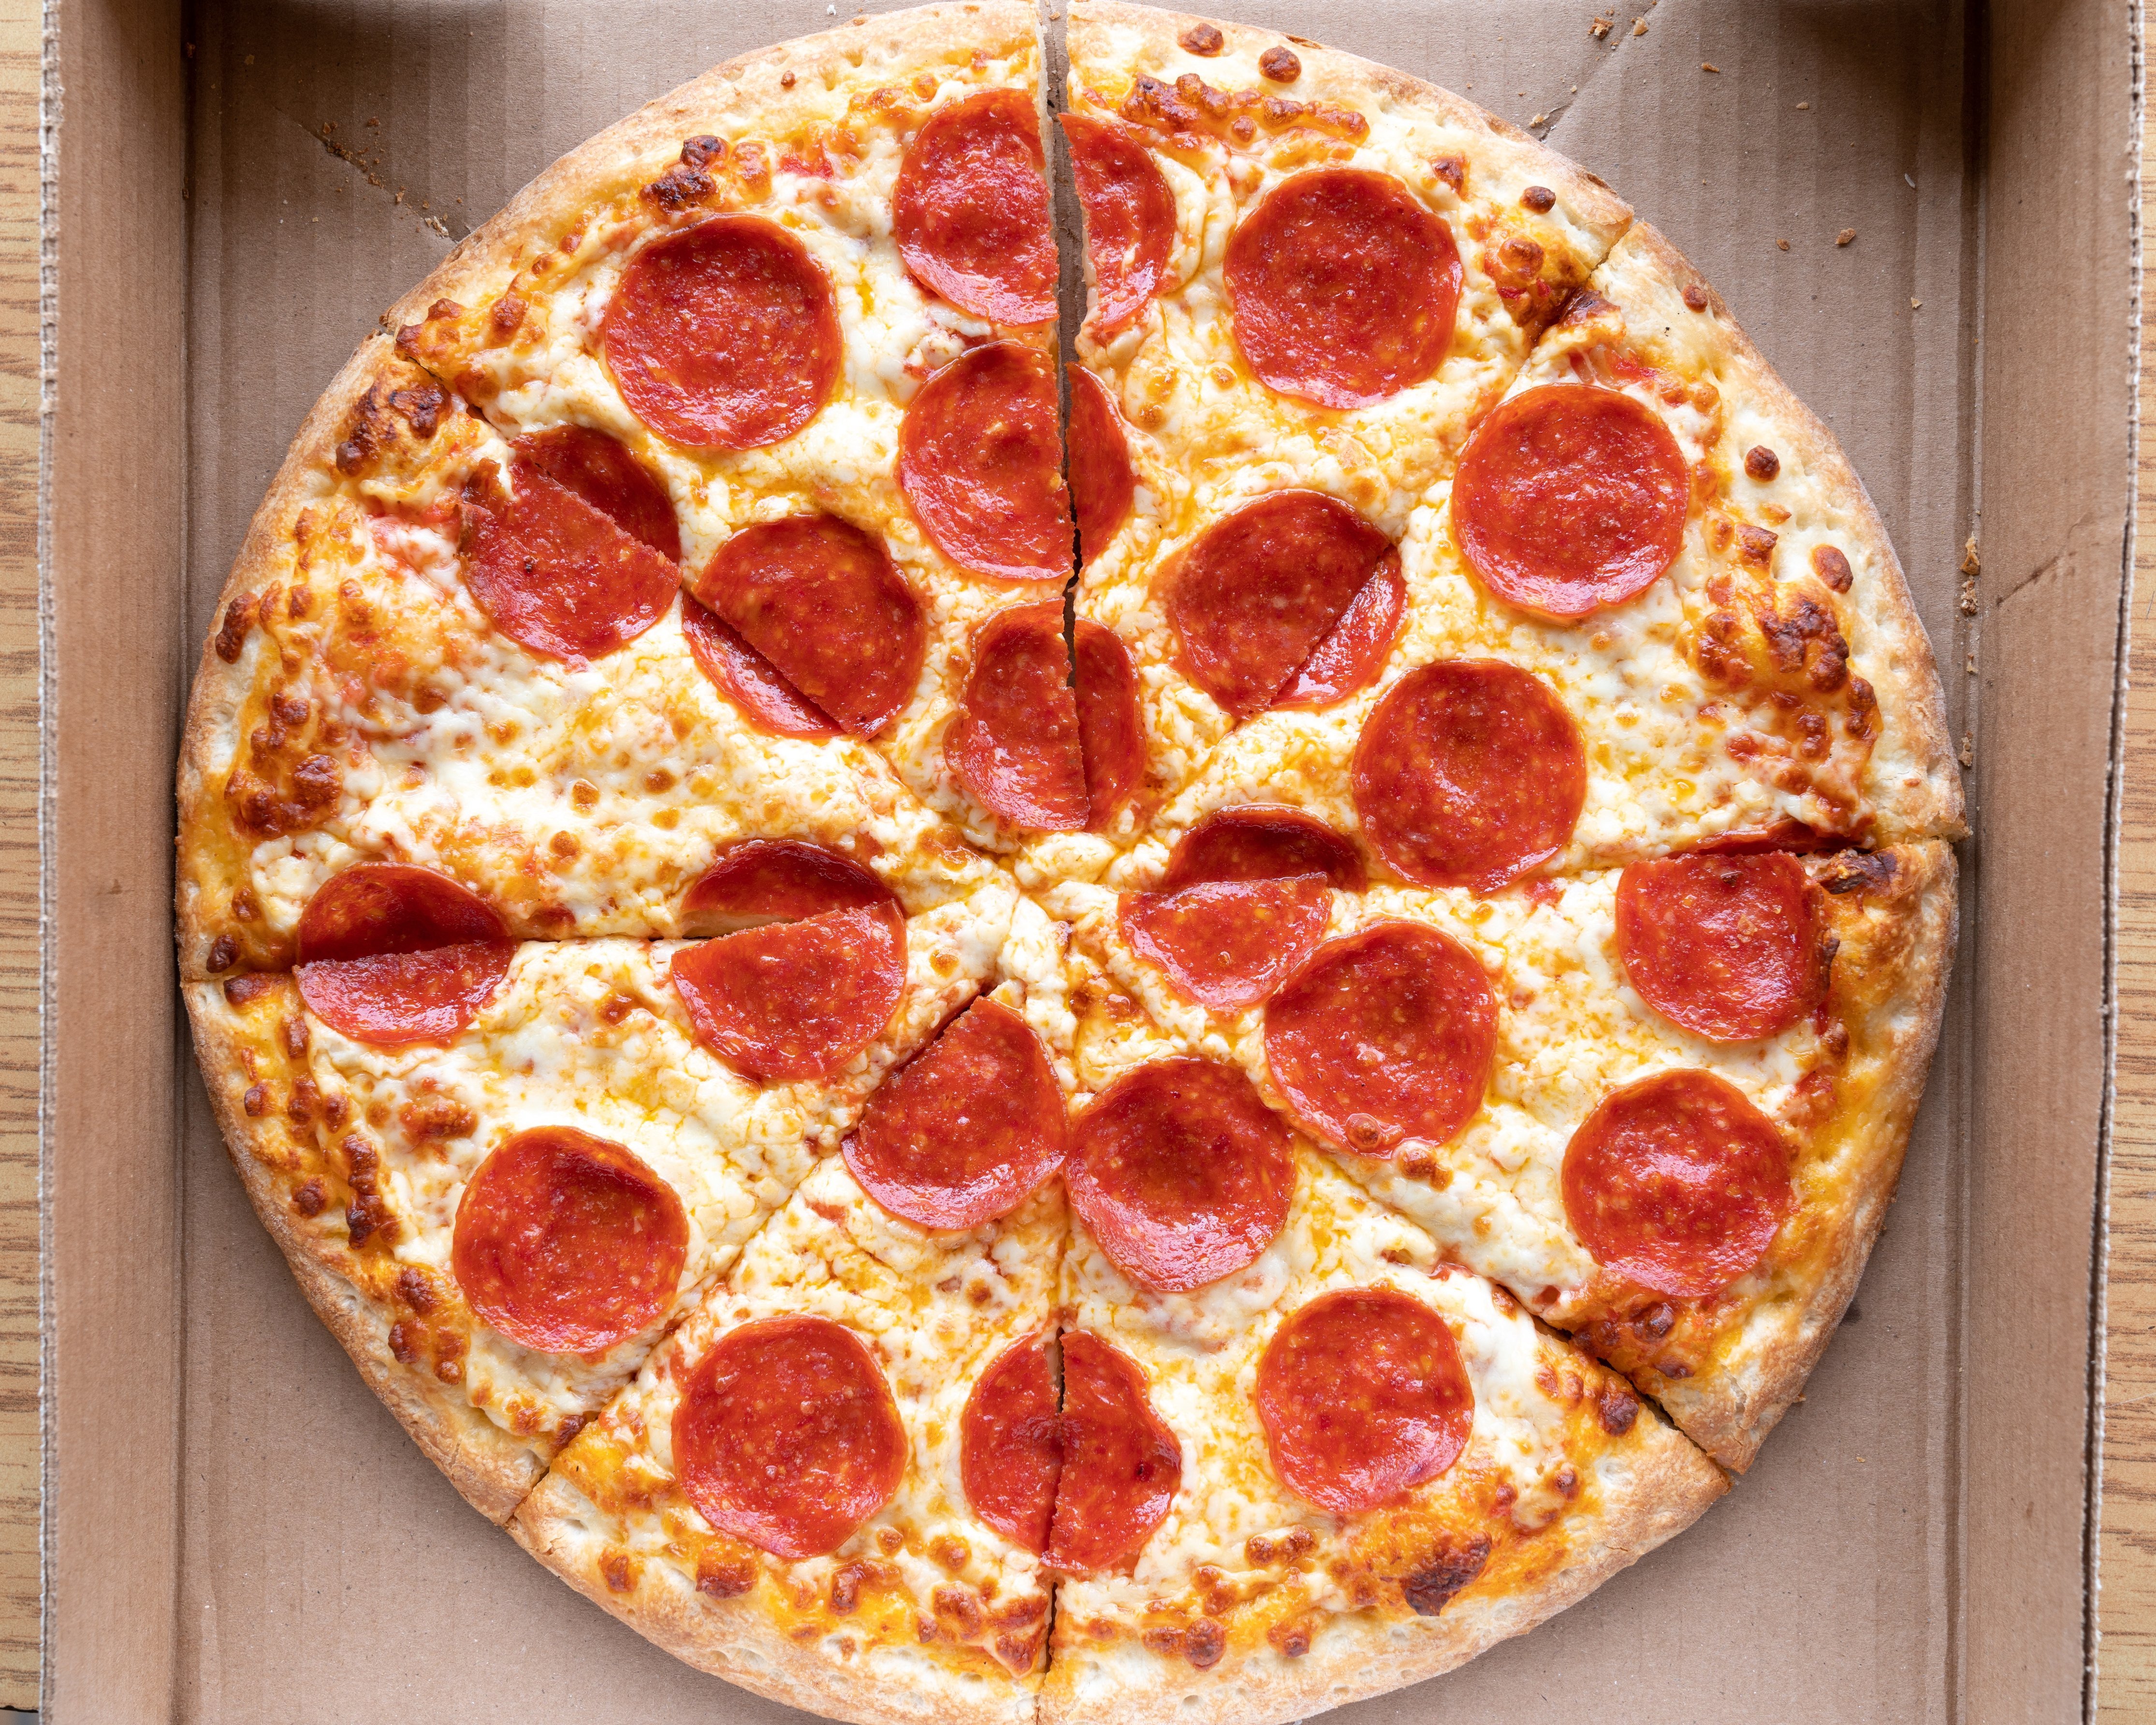 фото пиццы пепперони на столе дома фото 10